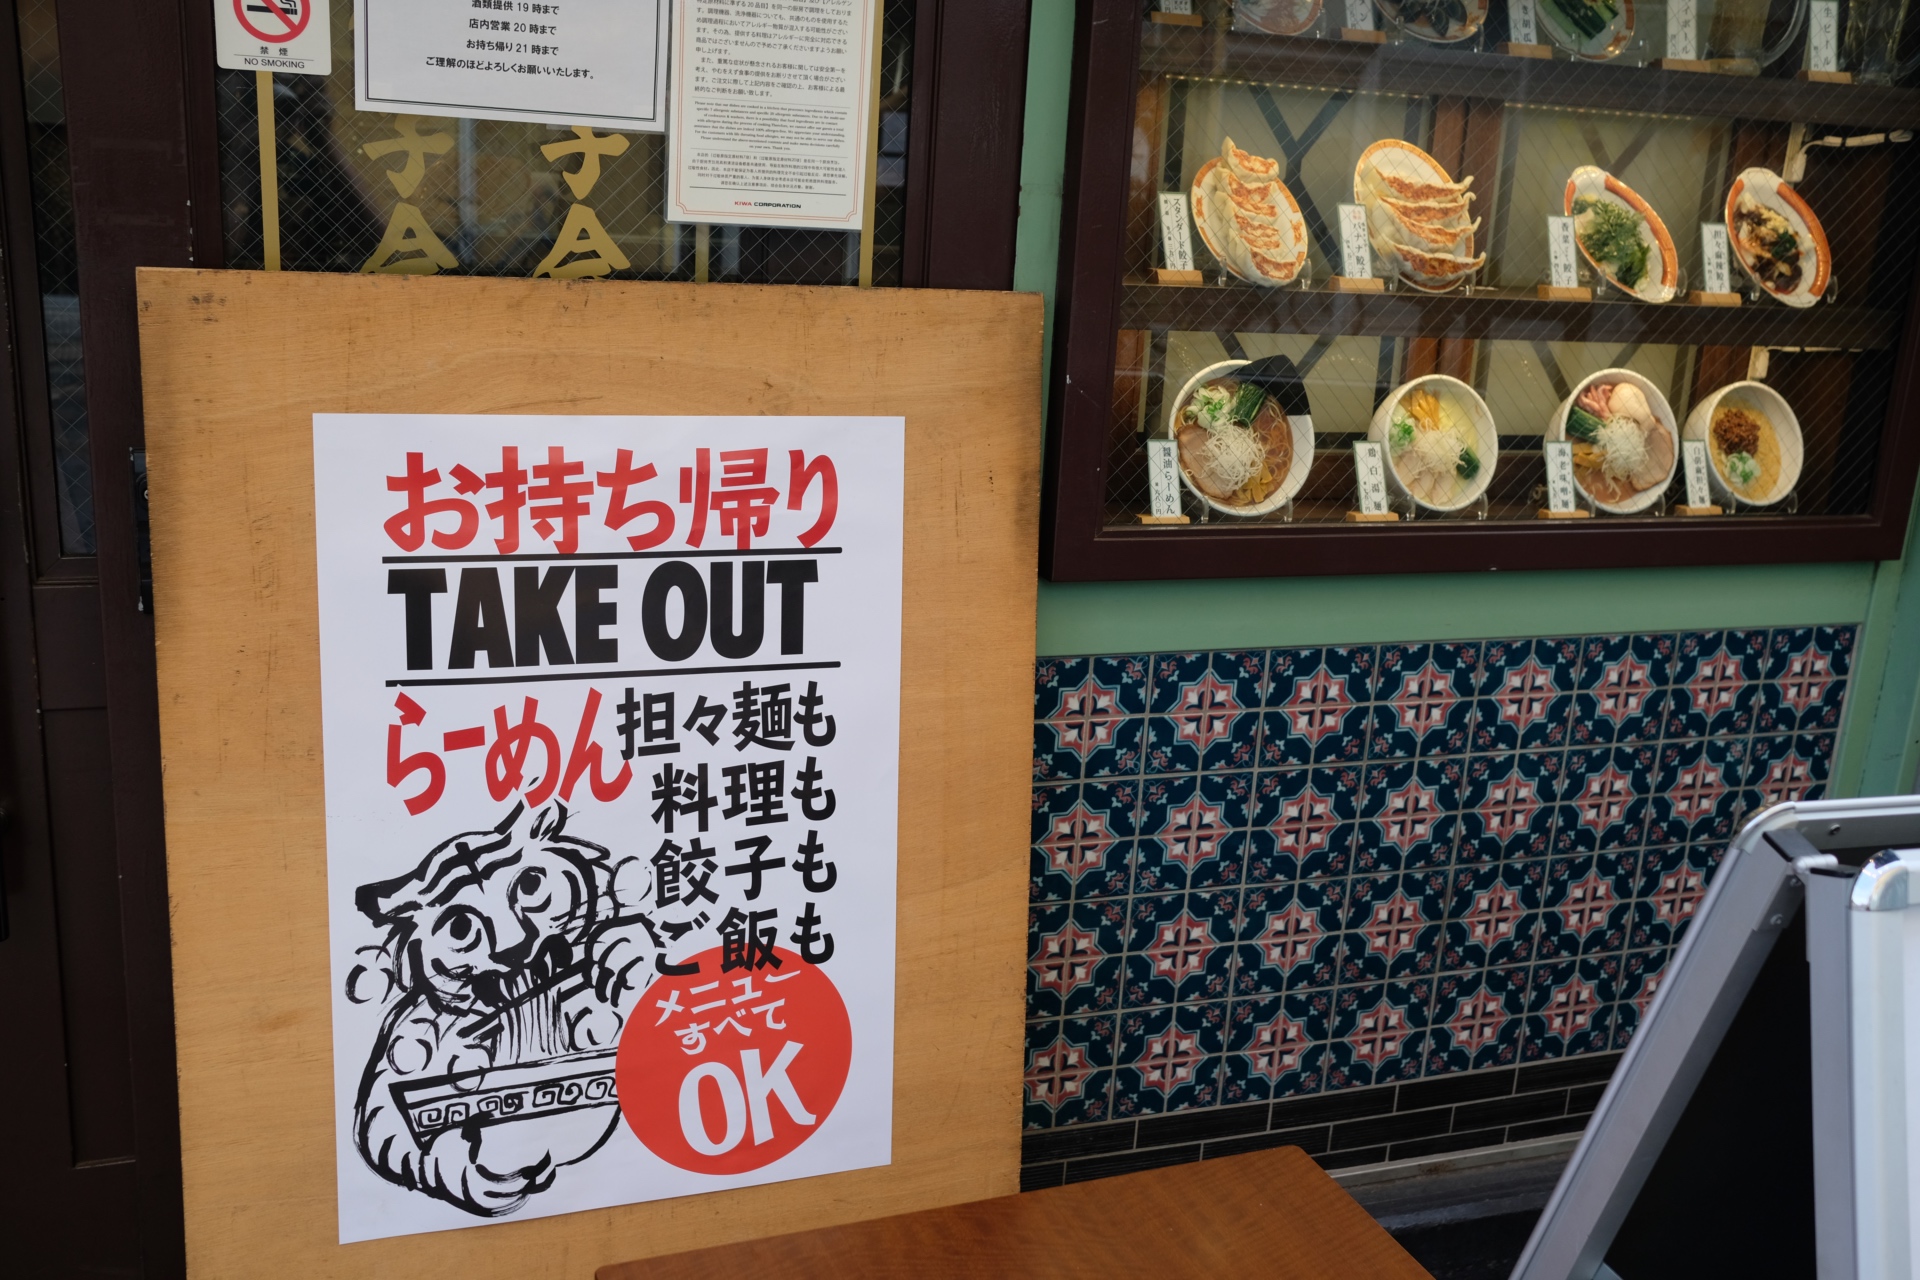 Seit der Corona-Pandemie setzen die Restaurants verstärkt auf ein Take-out-Angebot.